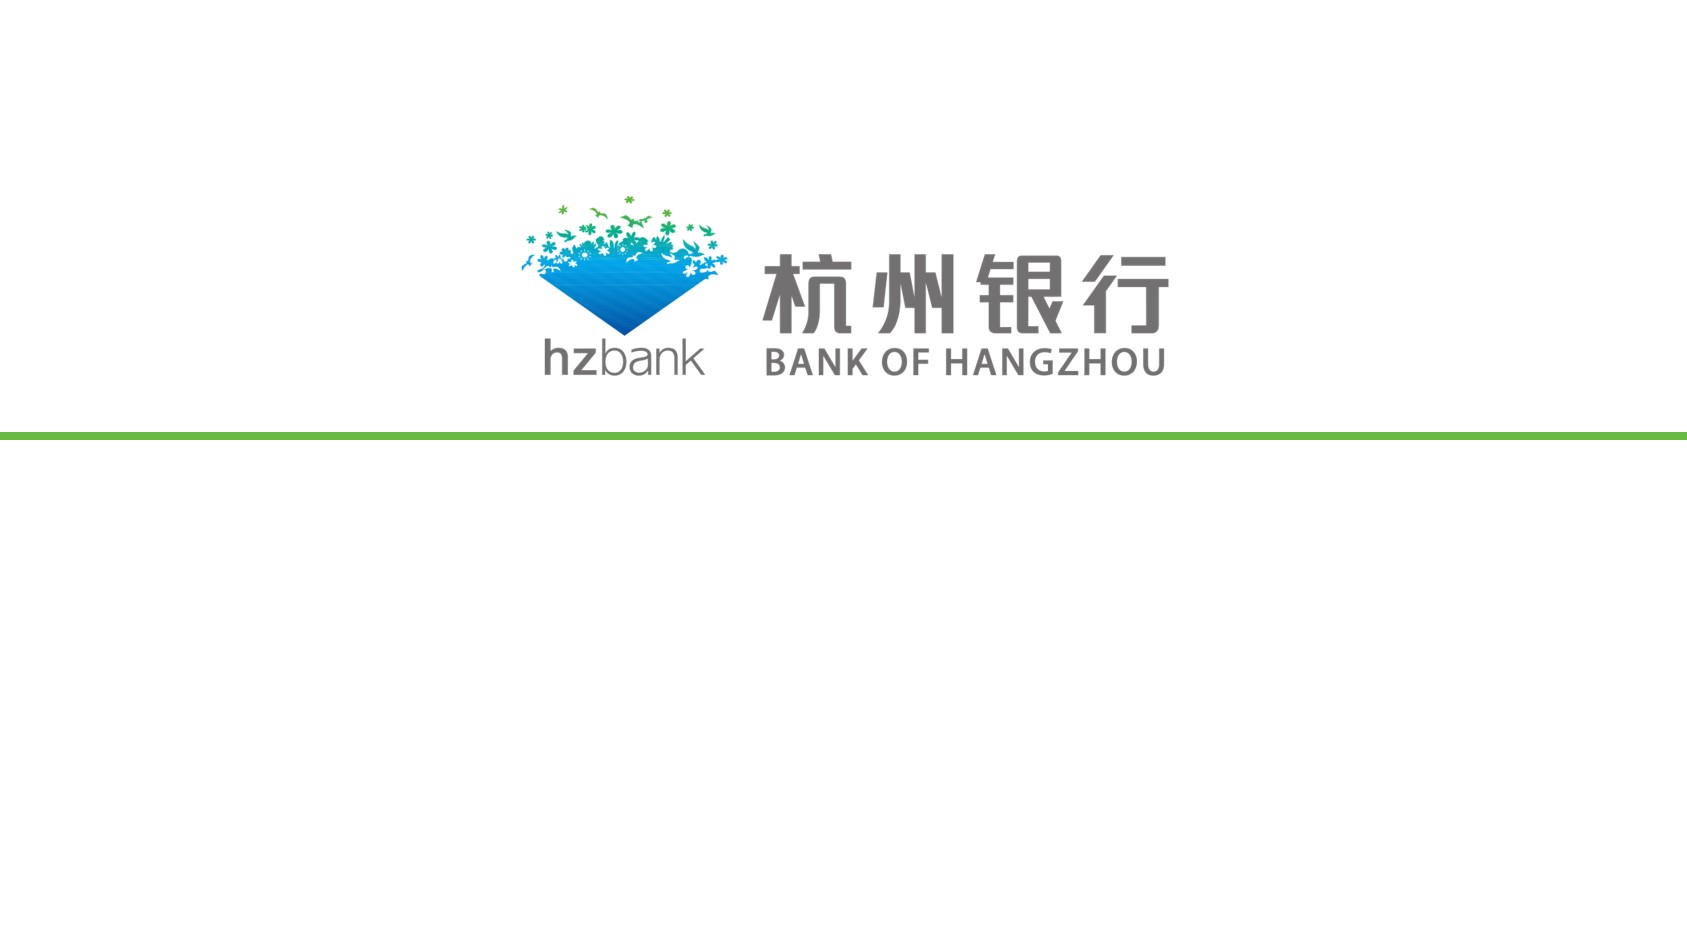 杭州银行数据报告PPT模板